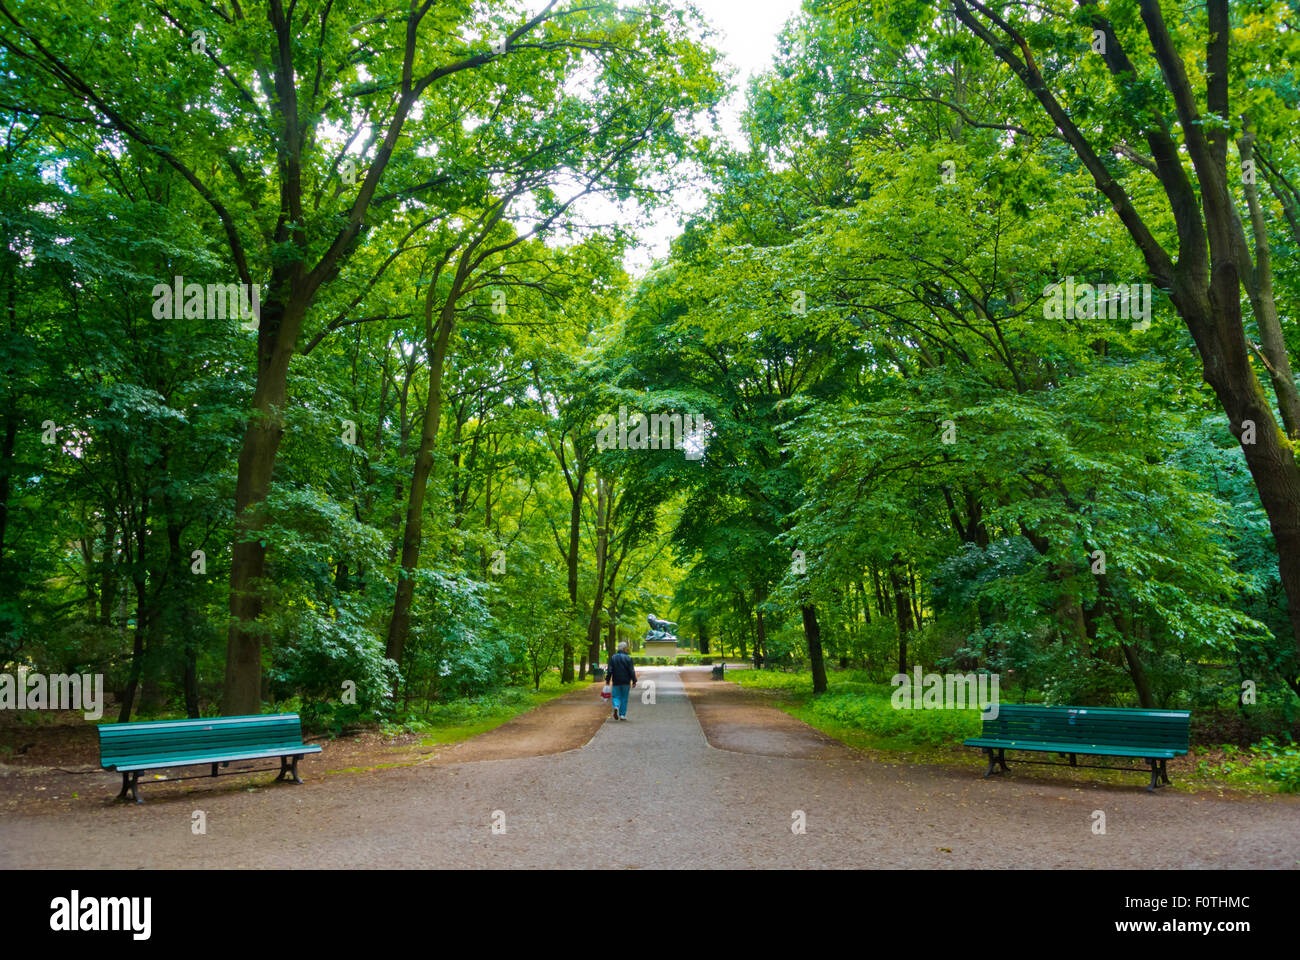 Tiergarten, Berlin, Germany Stock Photo